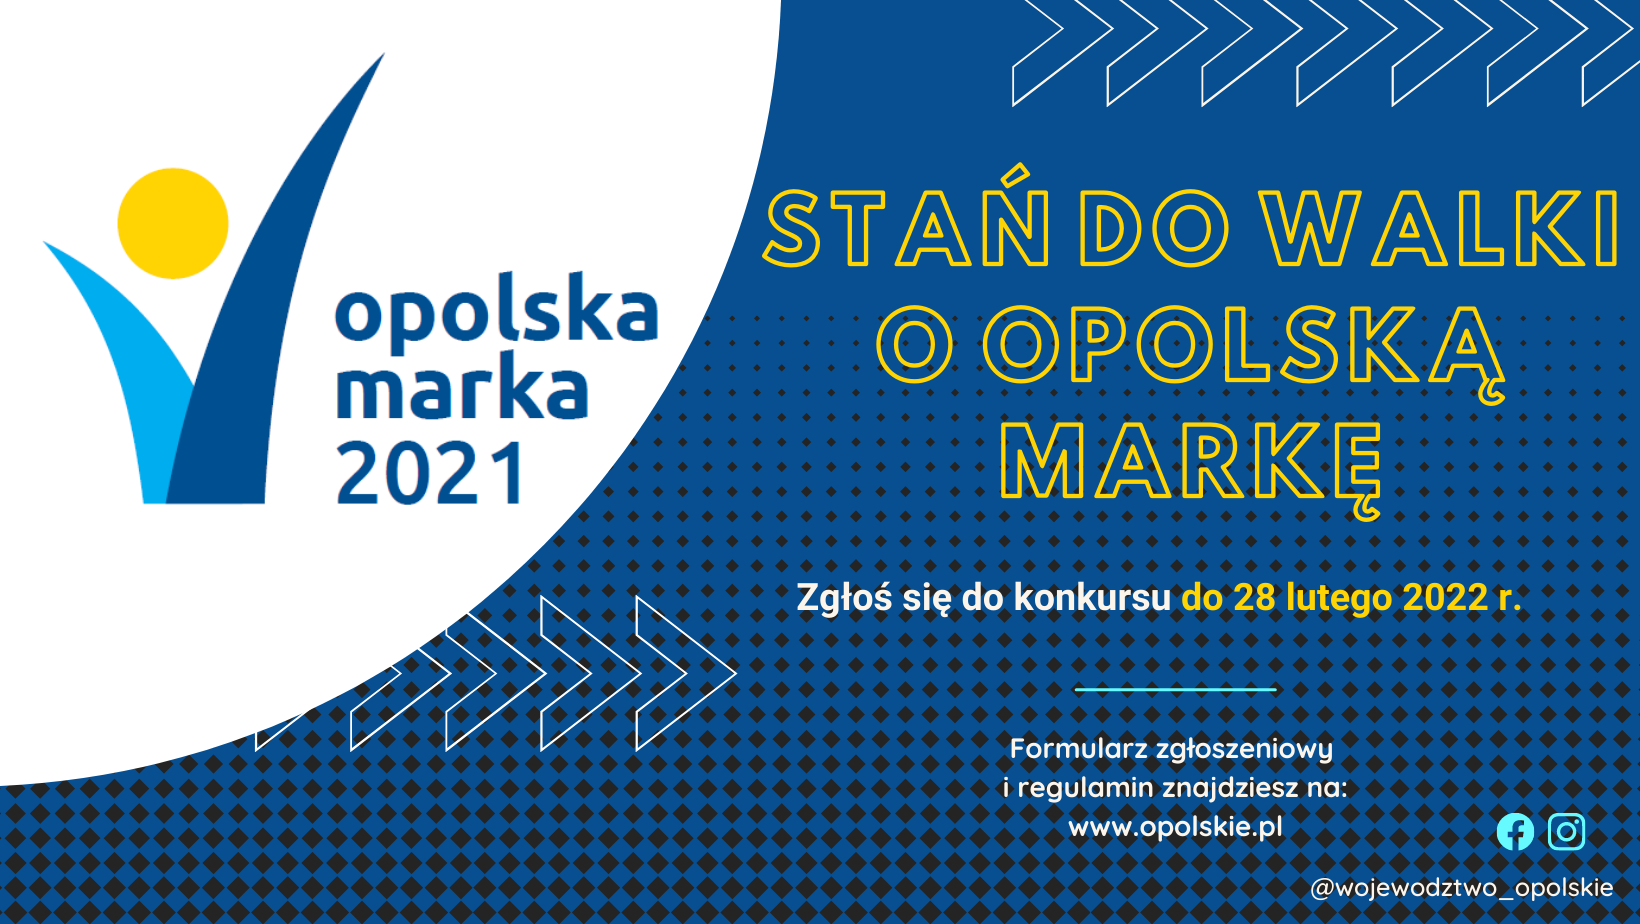 Stań do walki o Opolską Markę. Zgłoś się do kunkursu do 28 lutego 2022 r.
Formularz zgłoszeniowy i regulamin znajdziesz na www.opolskie.pl